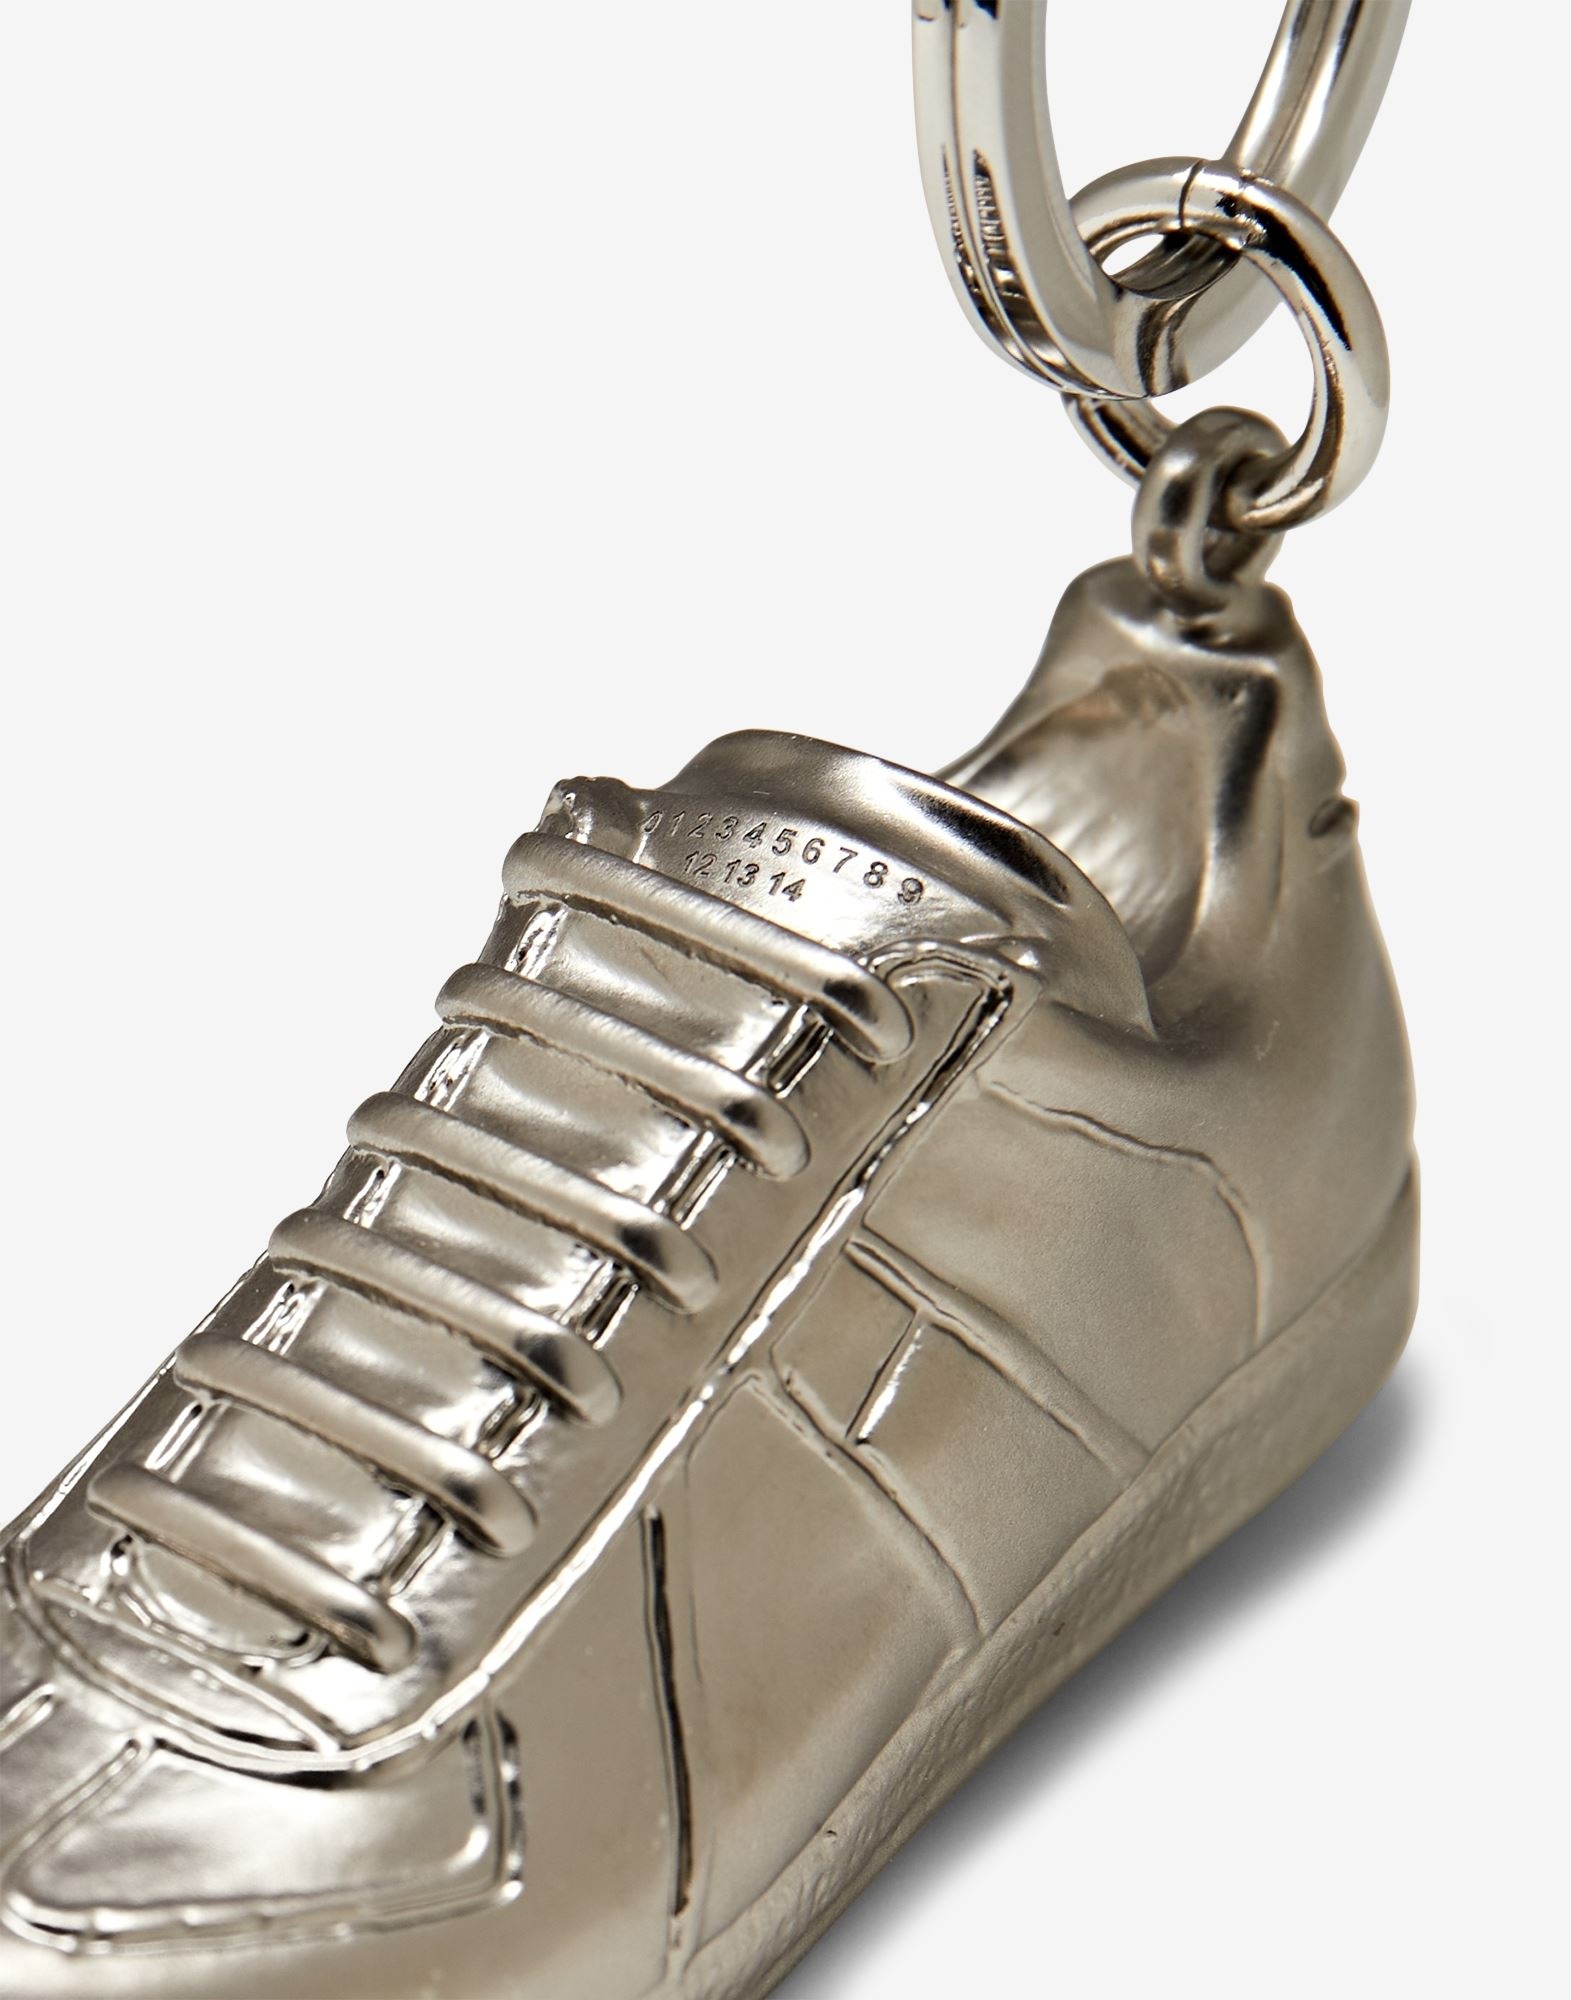 Replica sneaker keyring - 3